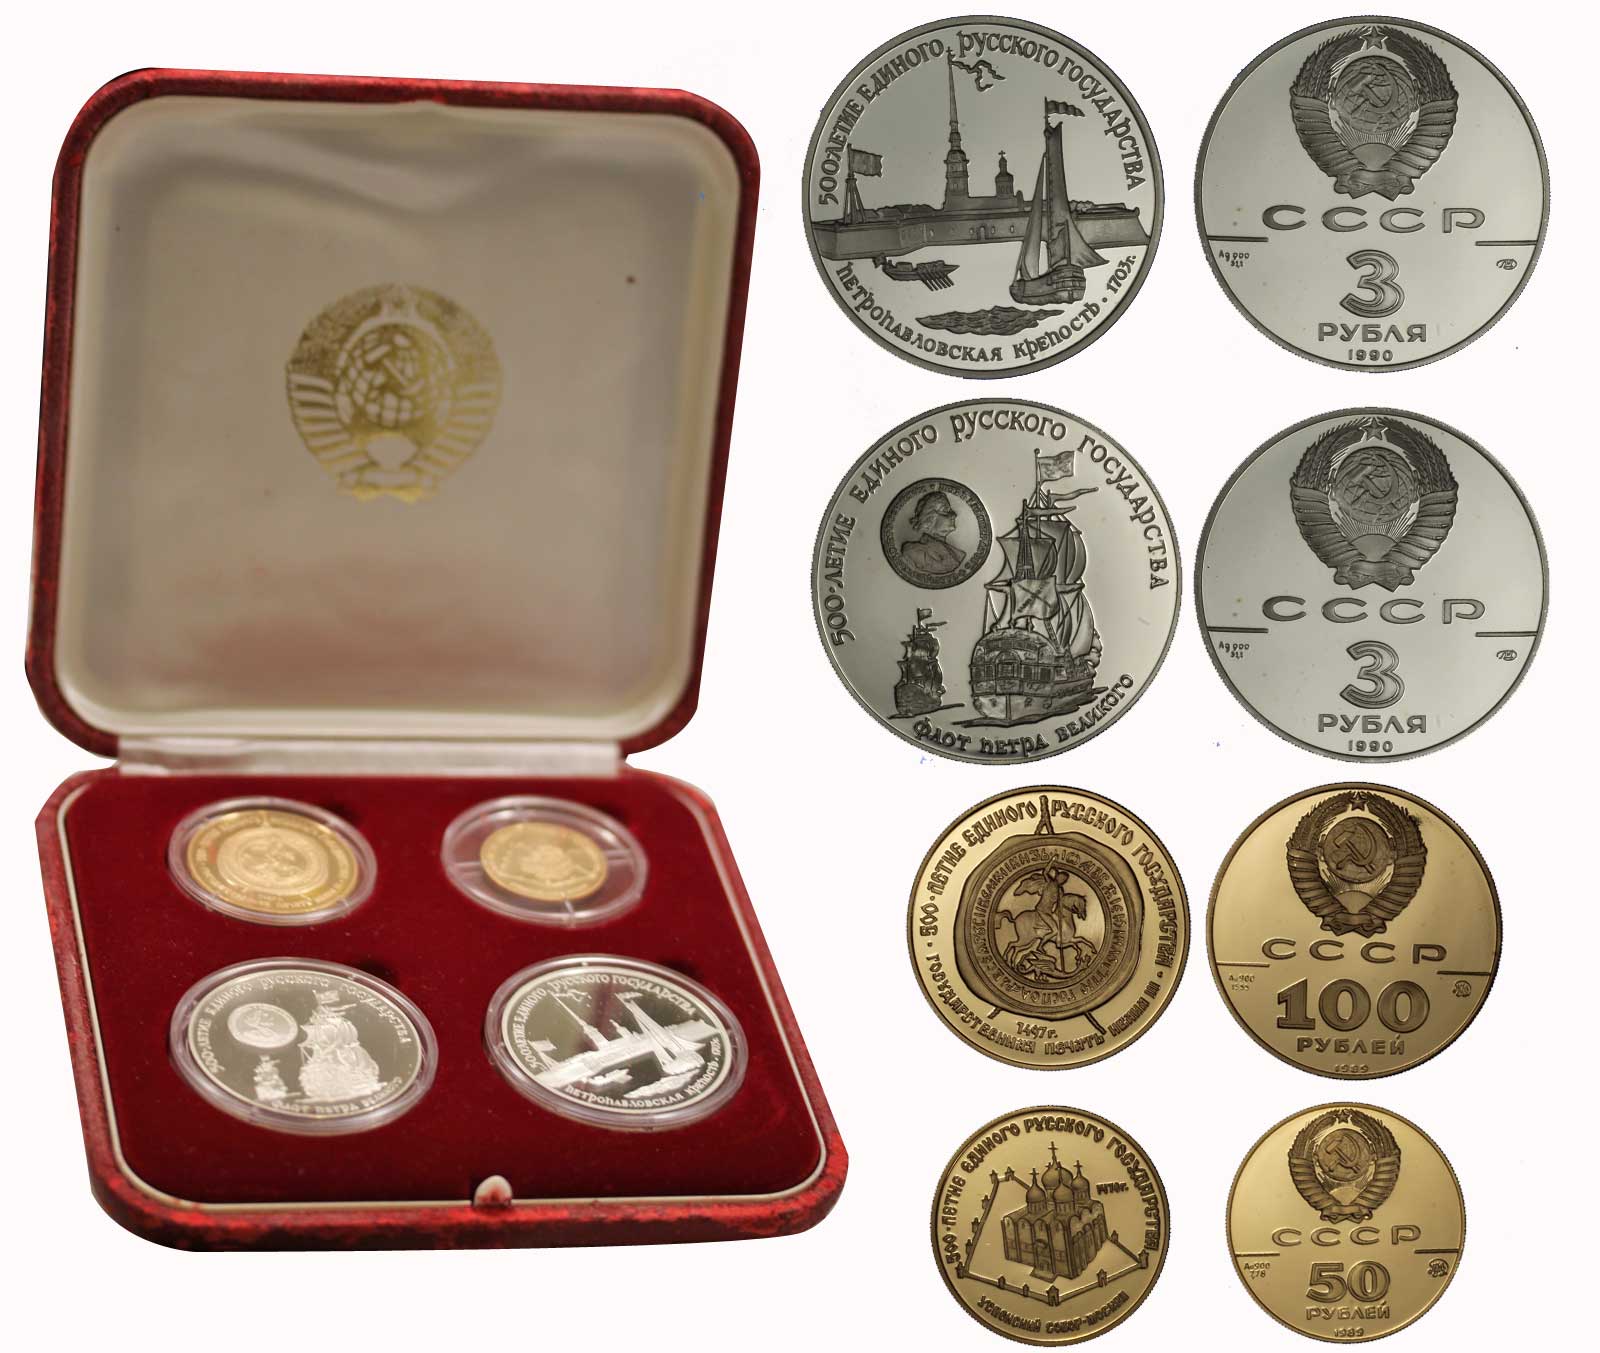 Serie da 50 e 100 rubli gr. 23,33 in oro 900/000 e da 3 rubli gr. 62,20 in ag. 900/000 - conf. originale ROVINATA